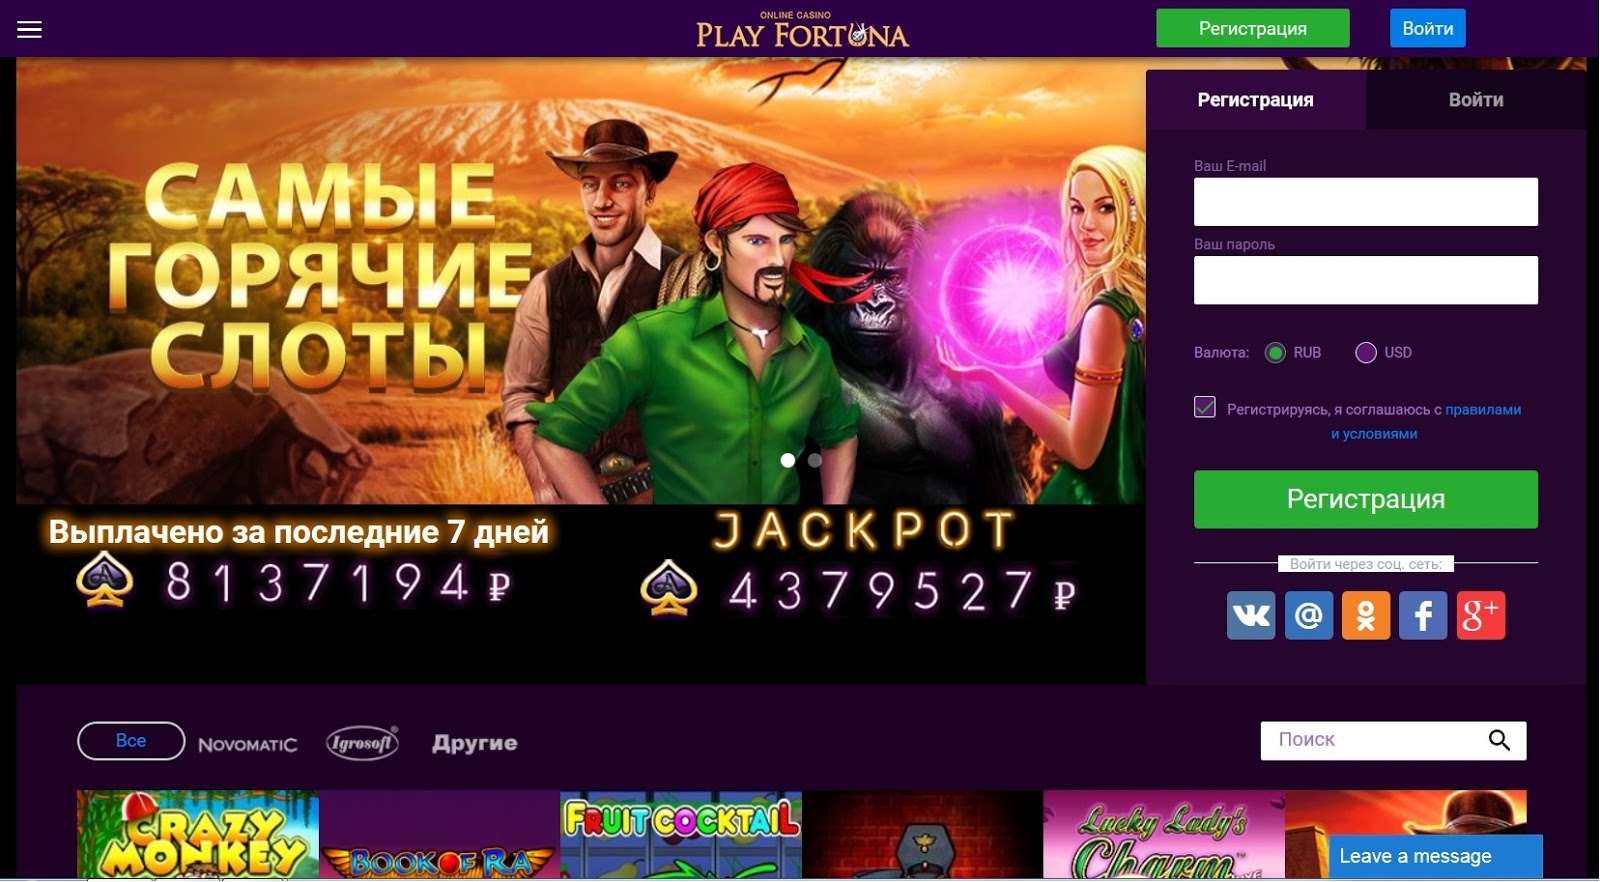 play fortuna casino официальный сайт скачать